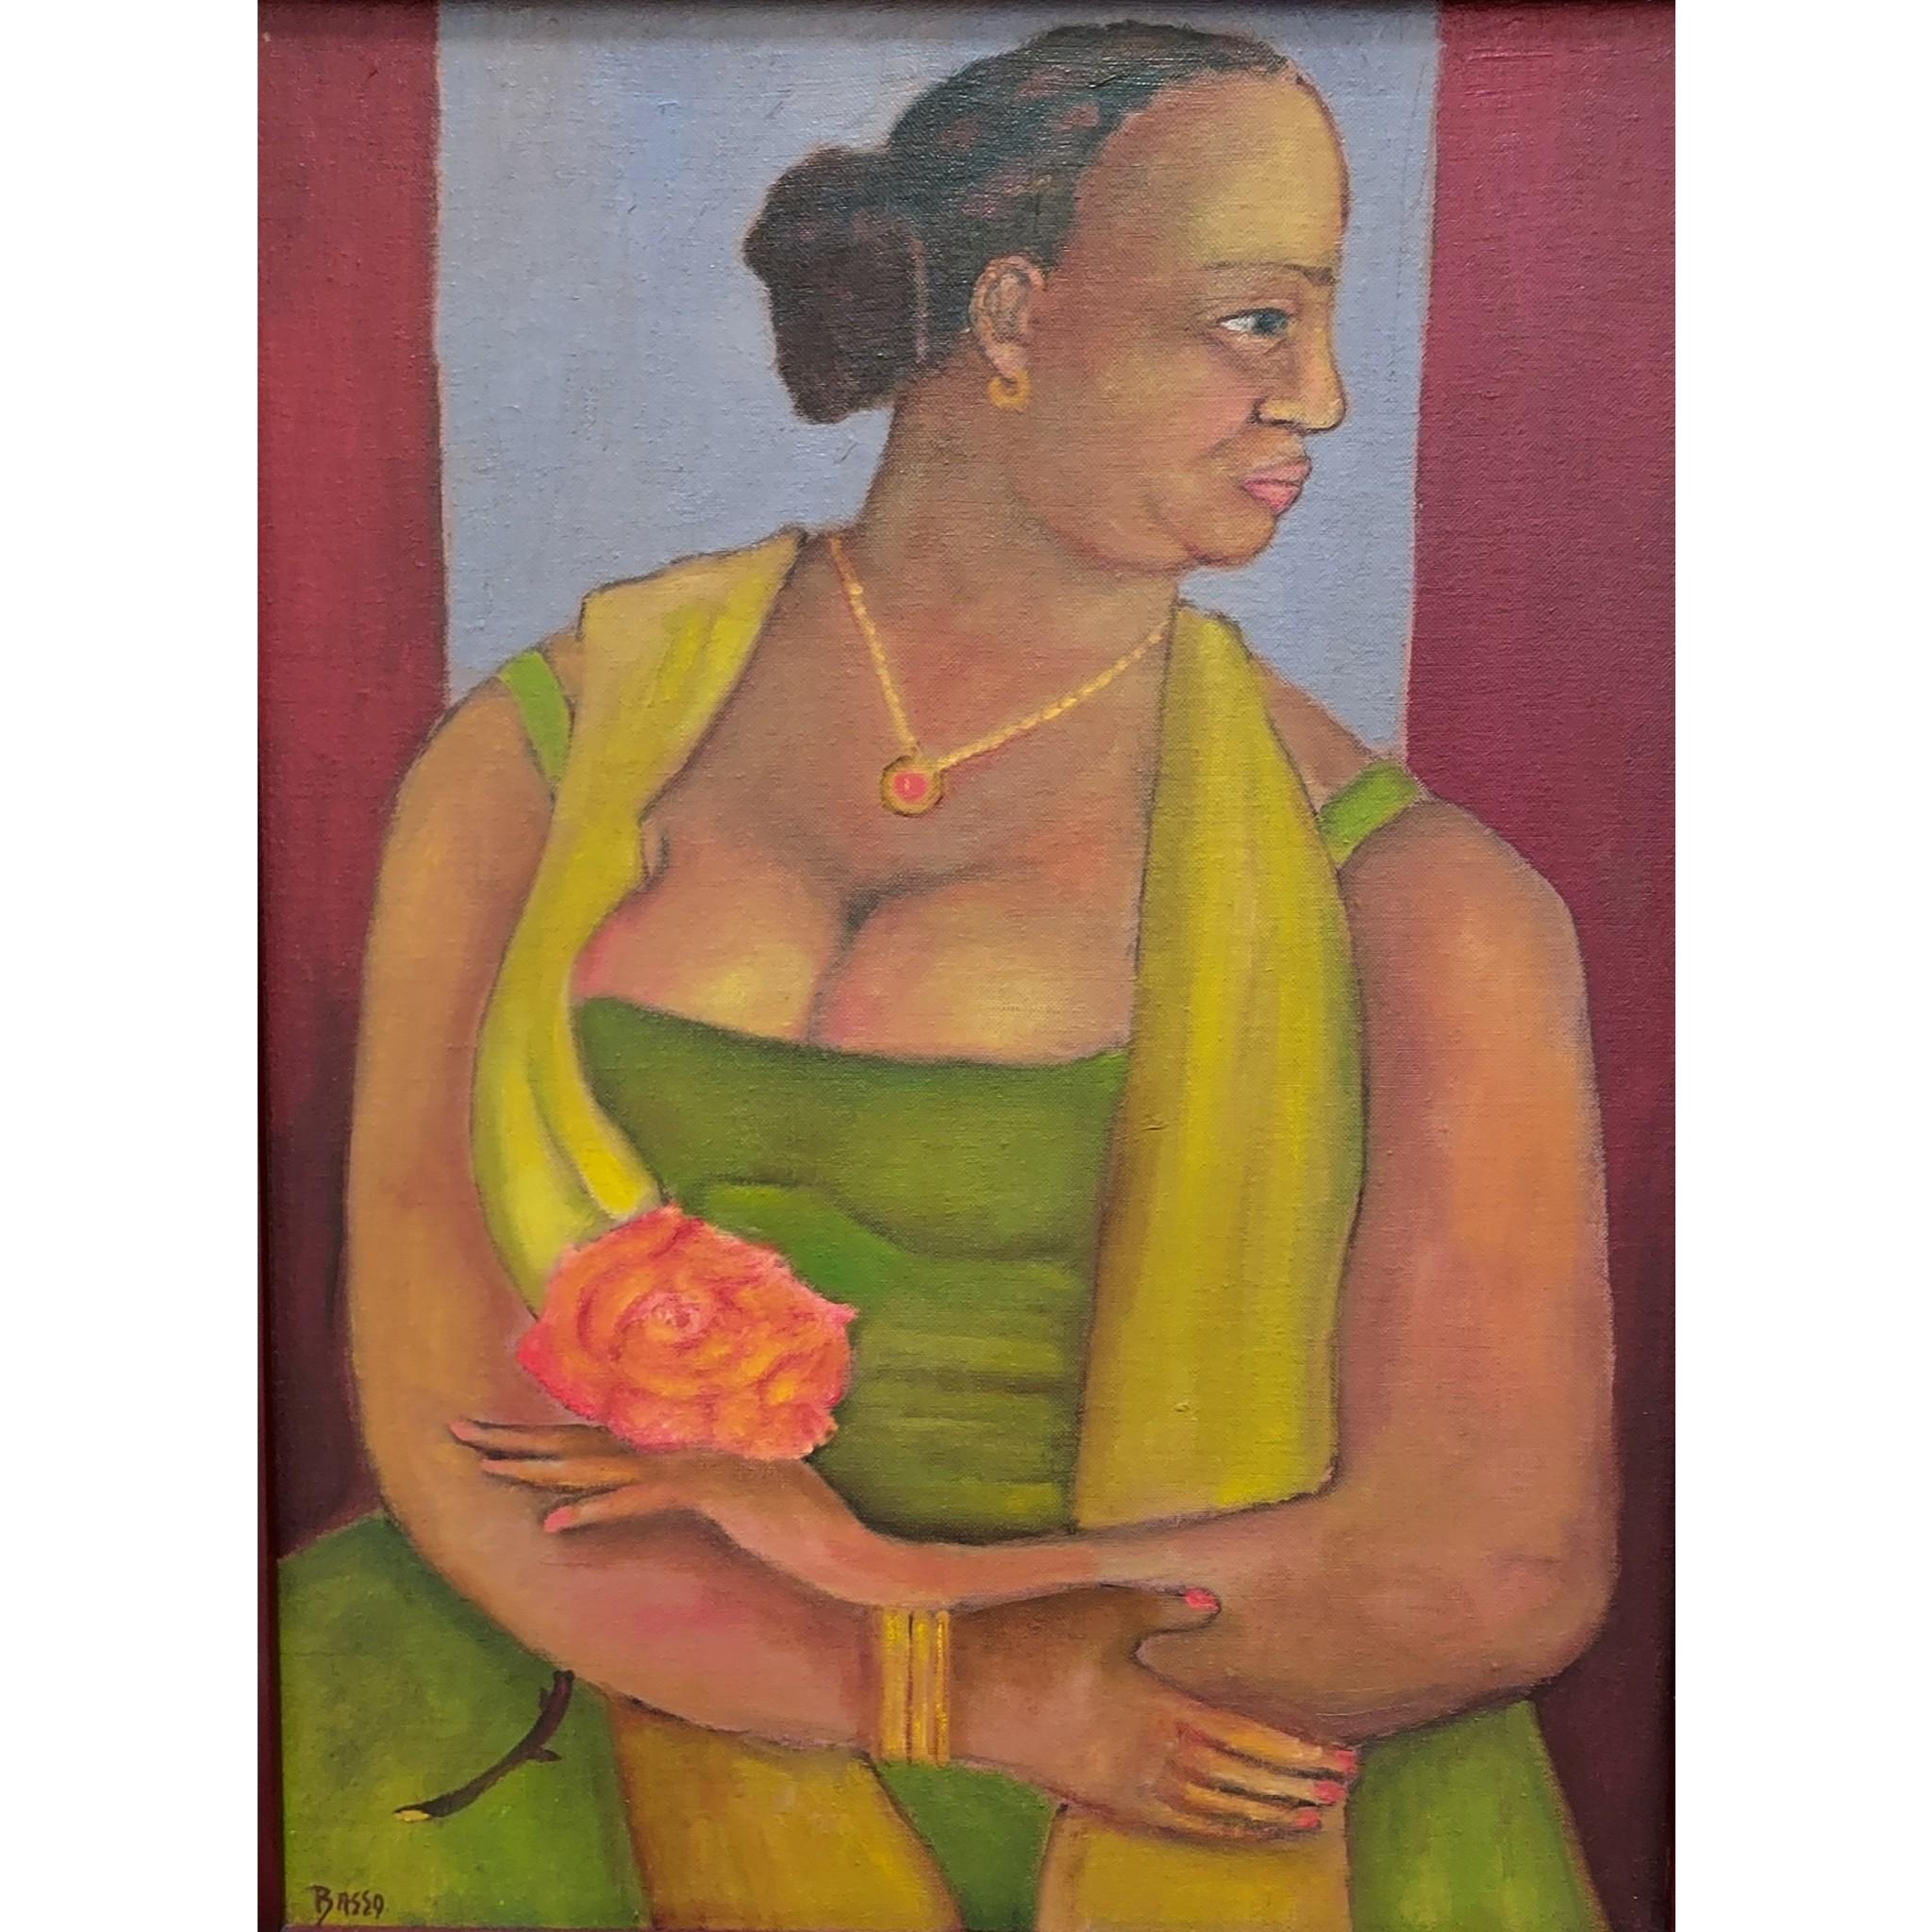 Portrait Painting Stephen Basso - Portrait de profil de femme en demi-longueur rouge et rose, couleur chaude et douce et apaisante